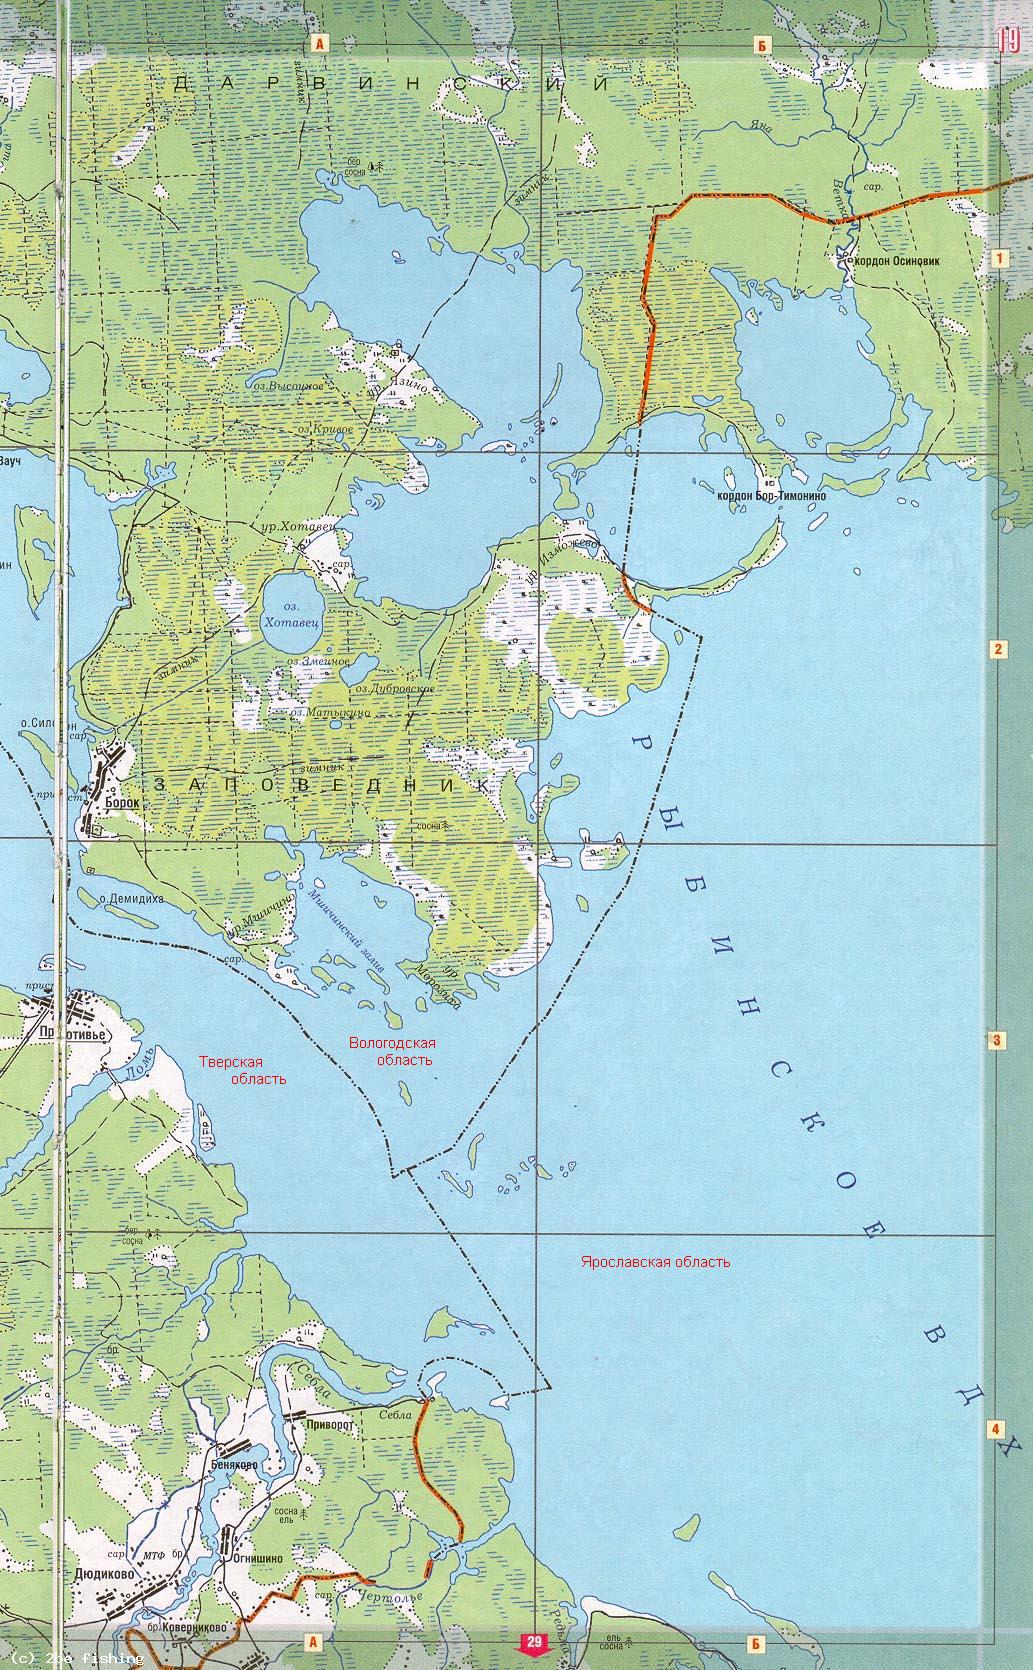 Разграничение 3 областей Рыбинского водохранилища